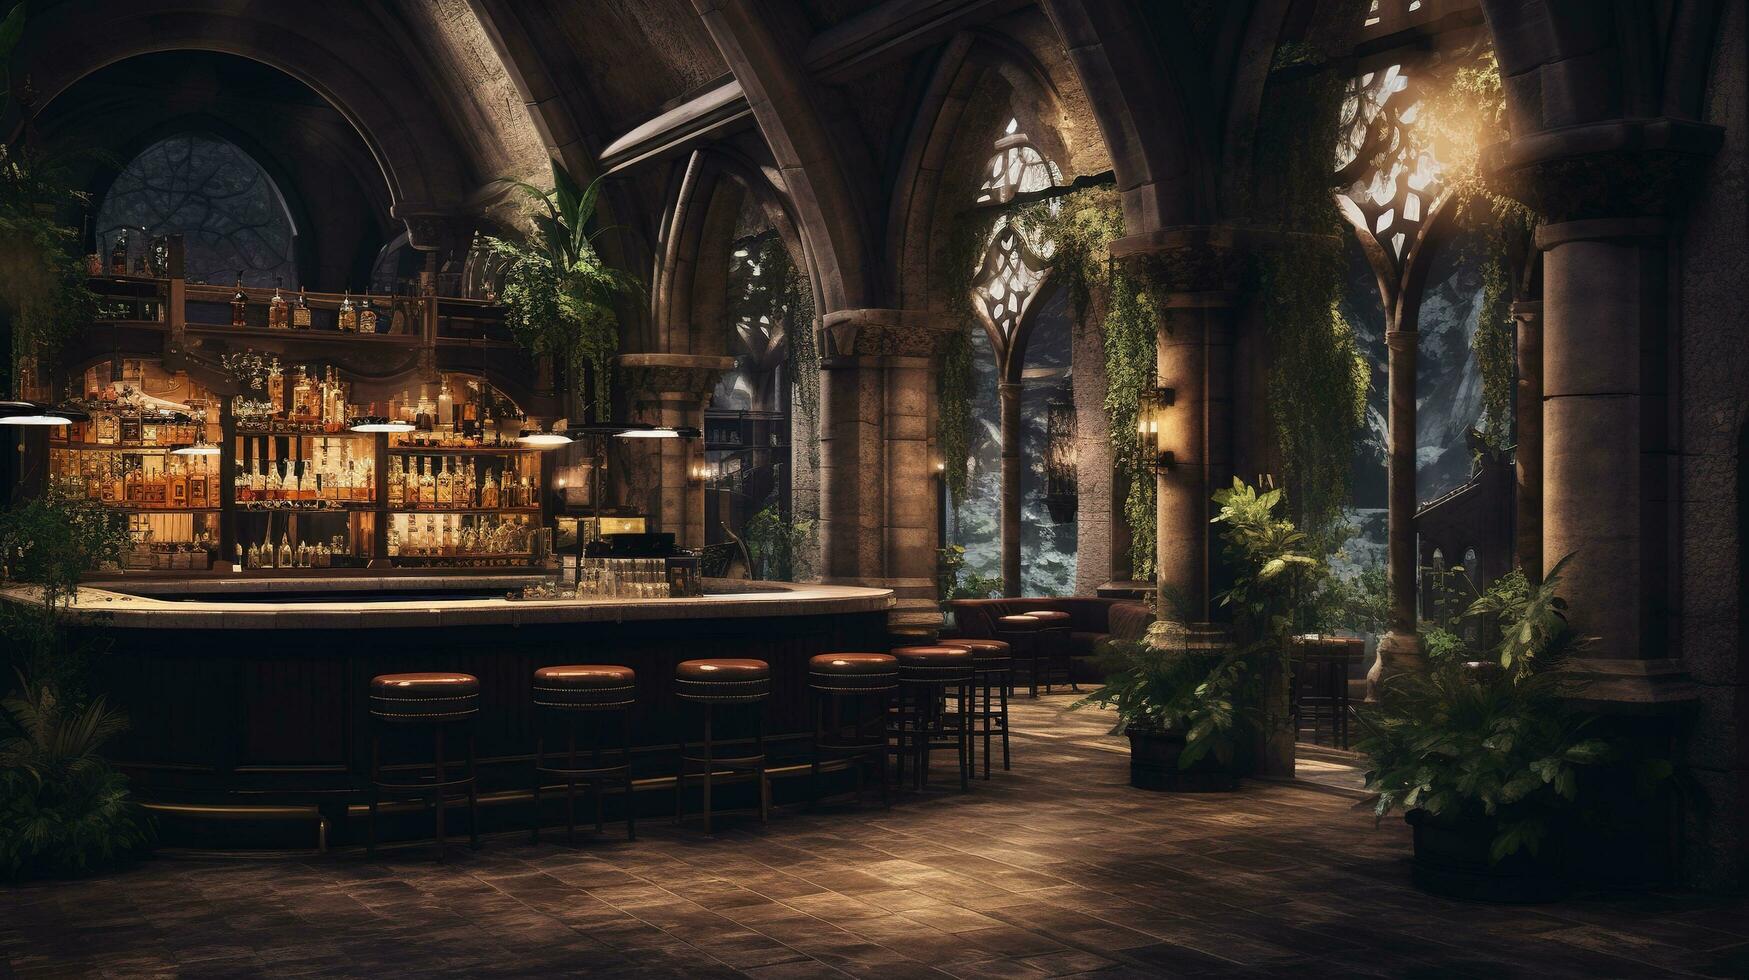 génératif ai, cathédrale antique intérieur avec bar ou pub à l'intérieur, gothique église style photo